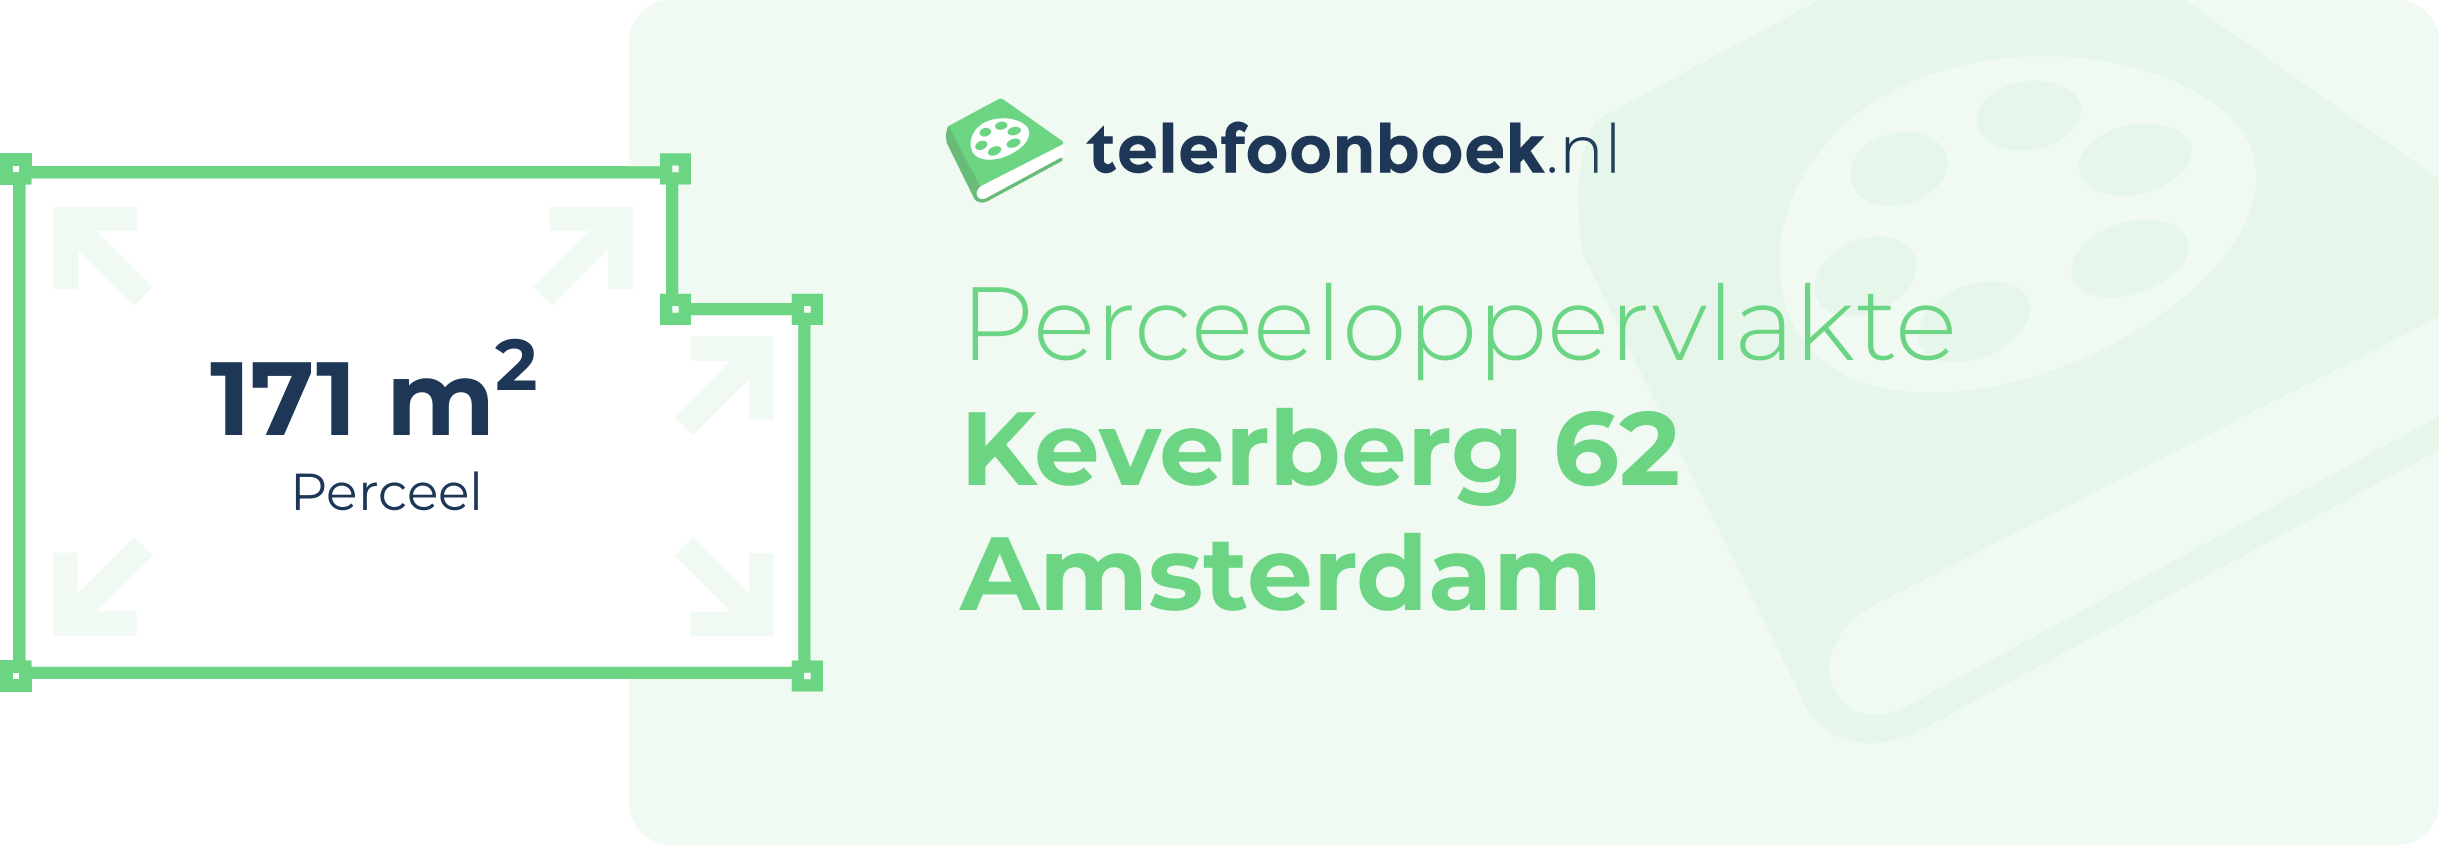 Perceeloppervlakte Keverberg 62 Amsterdam